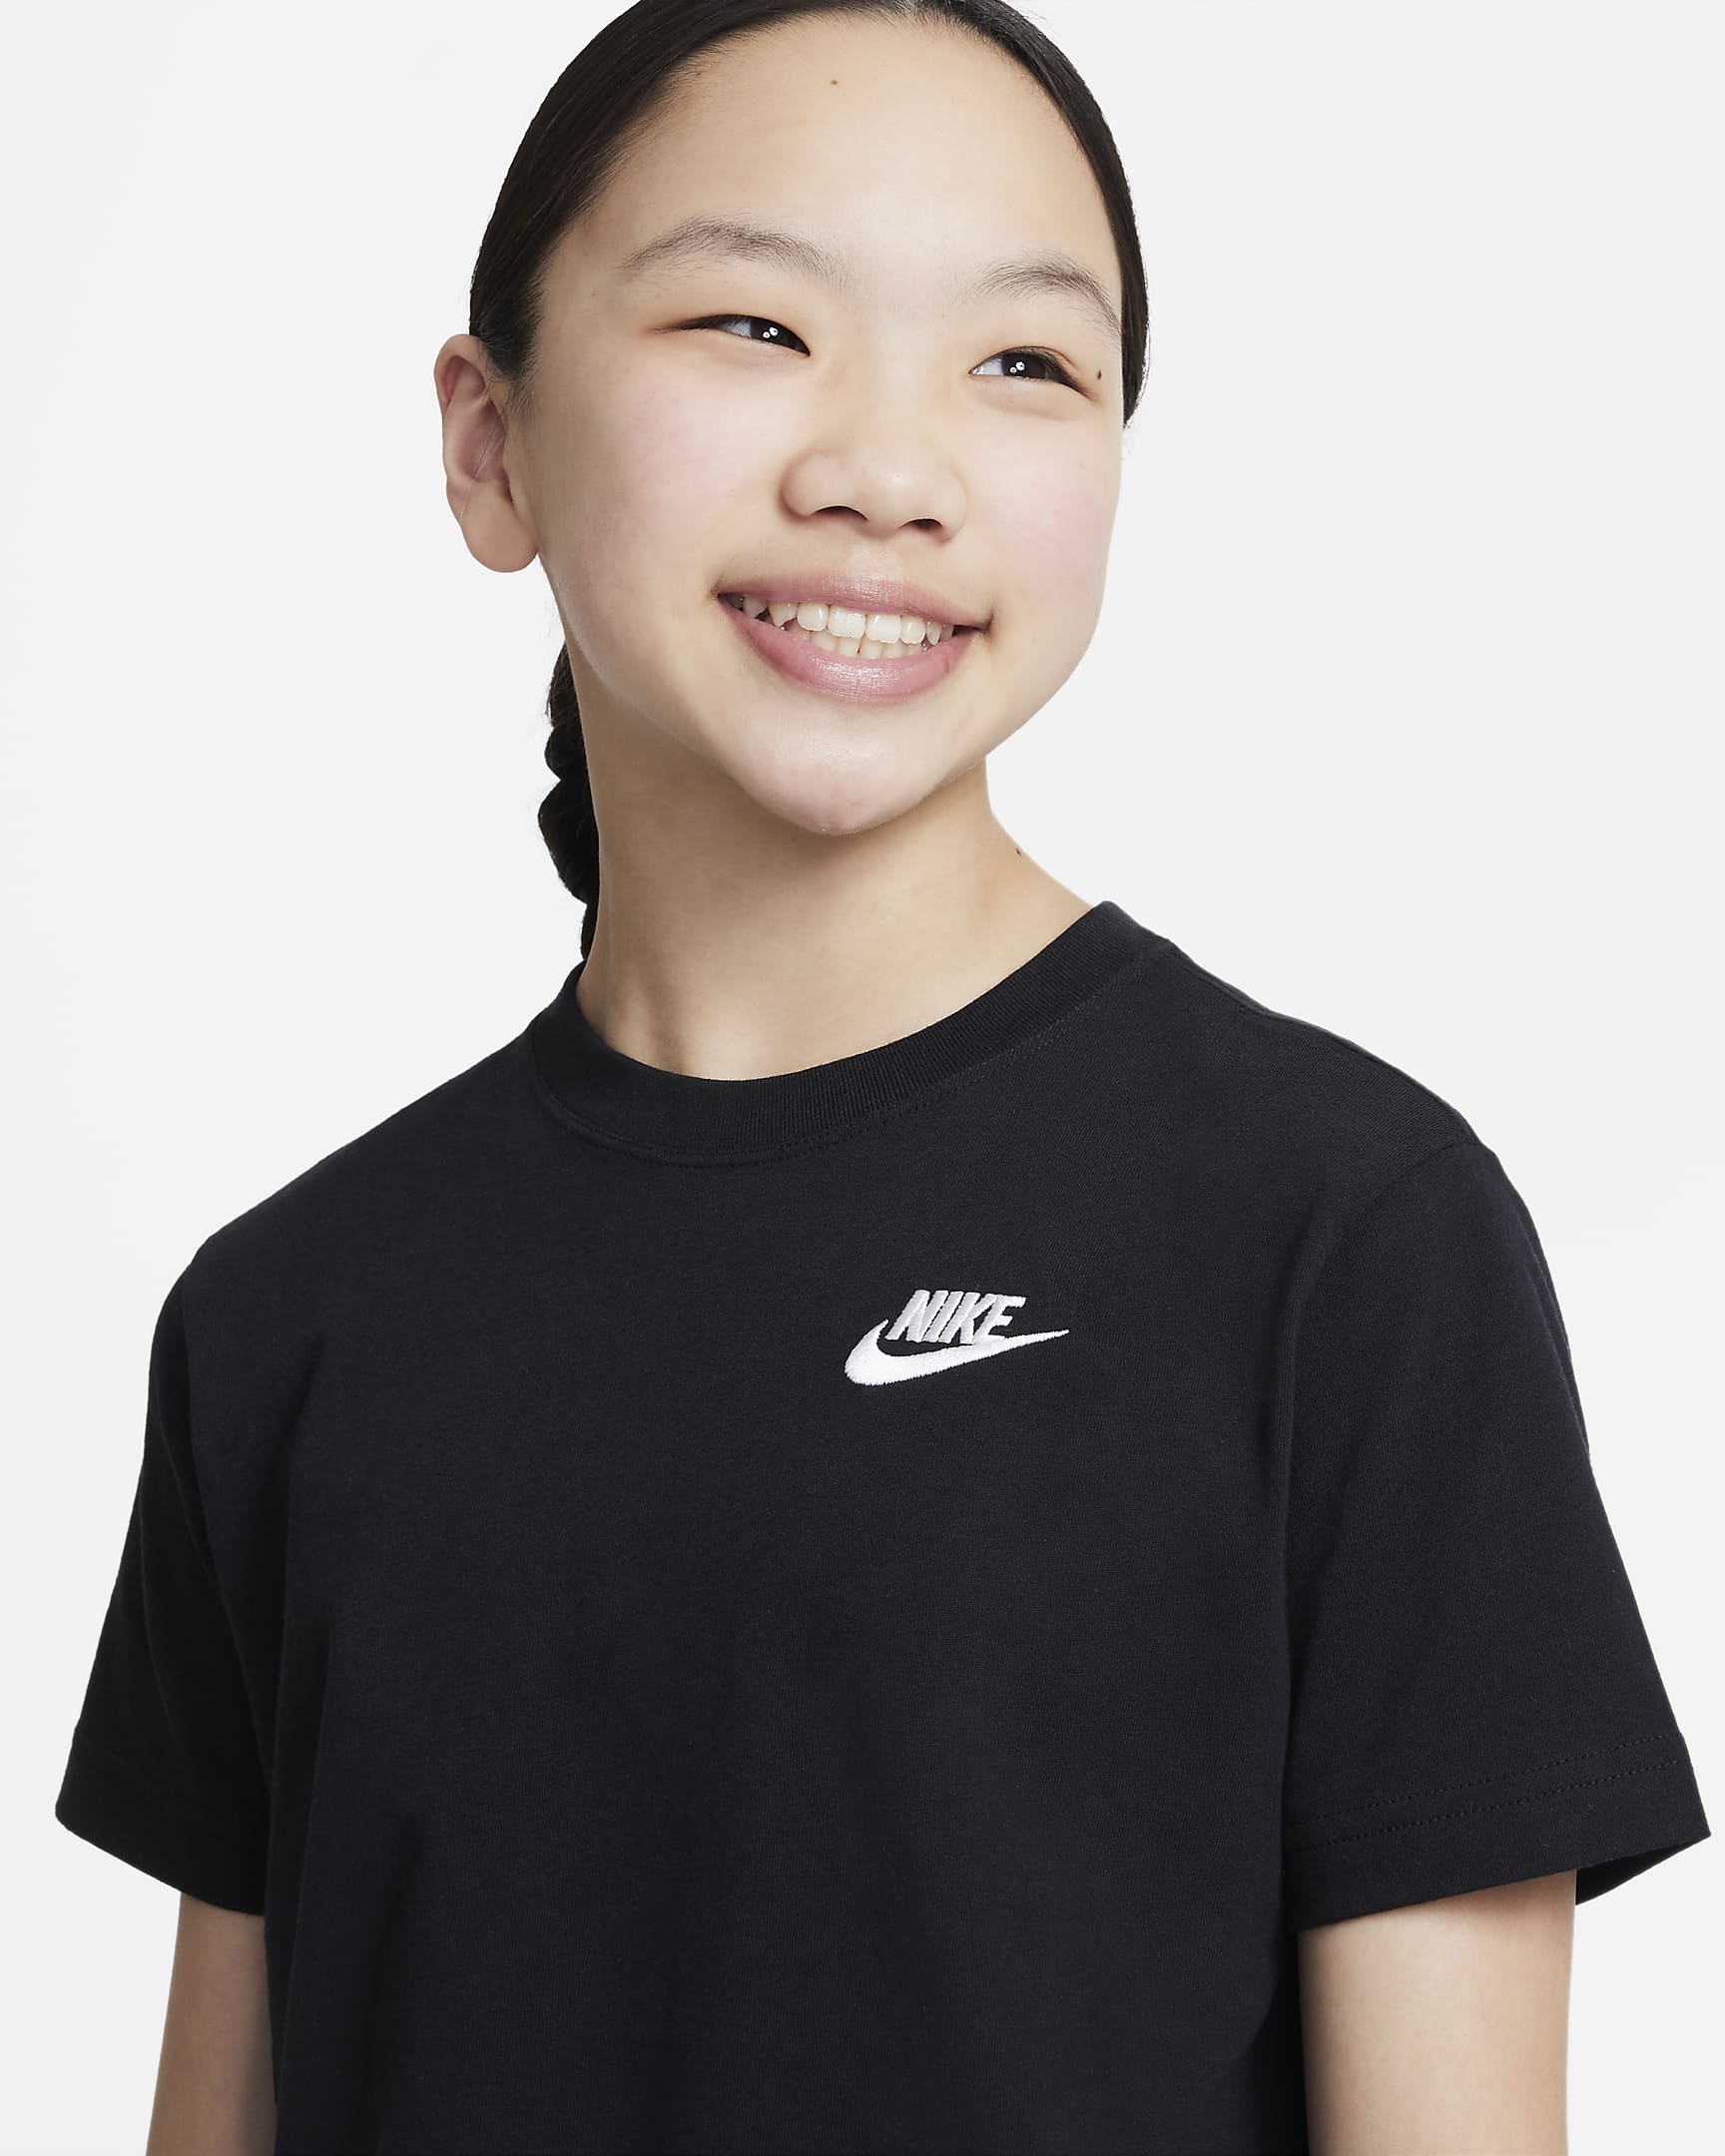 Tee-shirt Nike Sportswear pour ado (fille) - Noir/Blanc